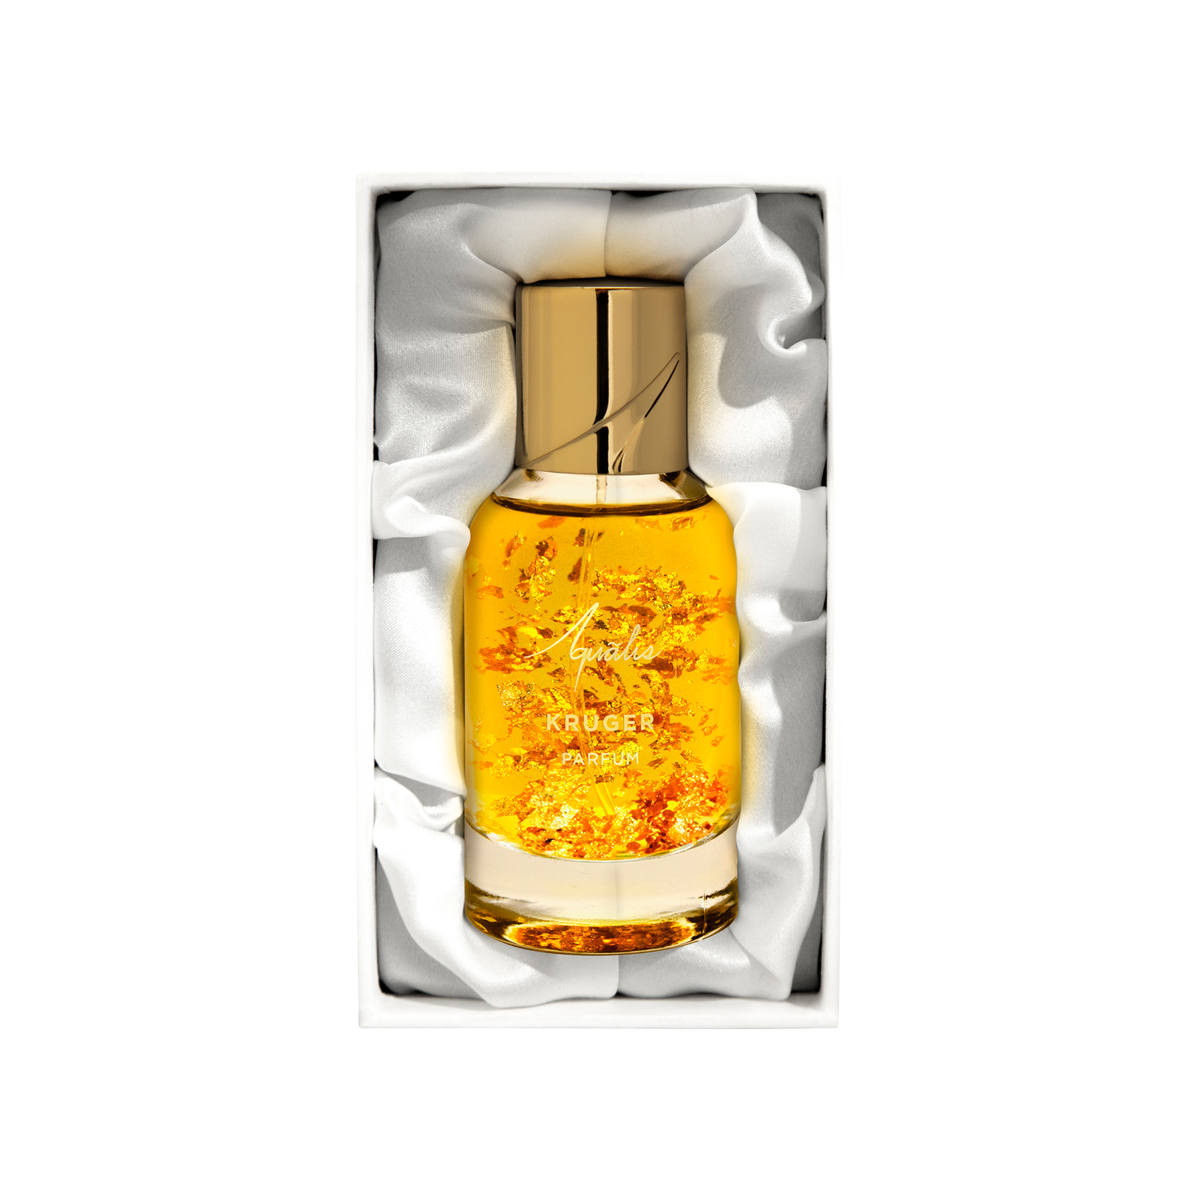 Aqualis - Kruger Extrait de Parfum